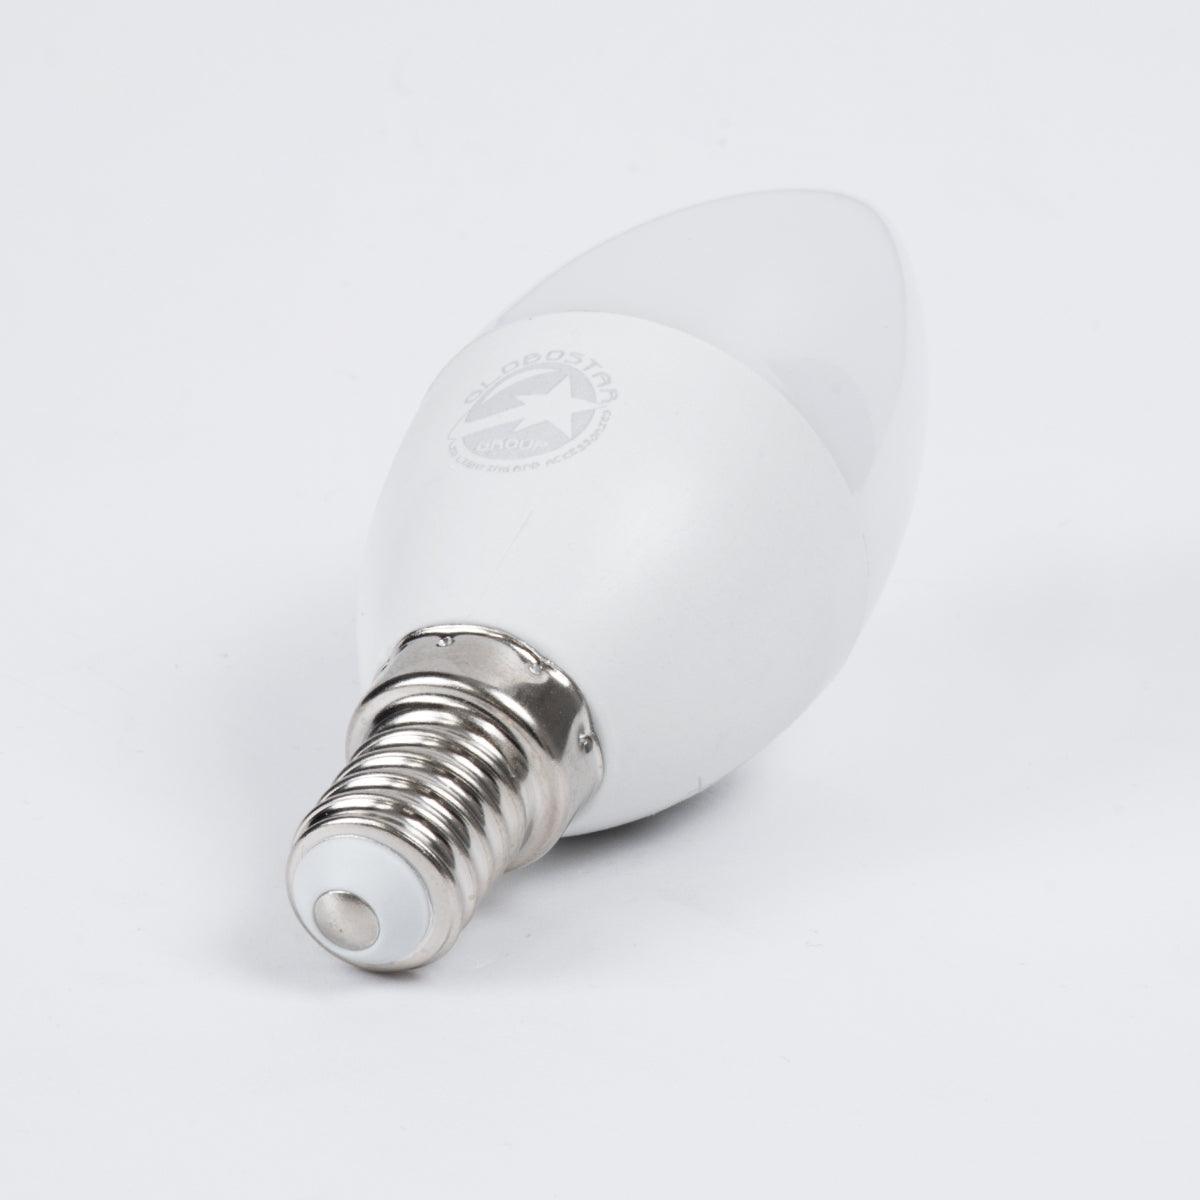 60010 Λάμπα LED E14 C37 Κεράκι 8W 904lm 260° AC 220-240V IP20 Φ3.7 x Υ10cm Φυσικό Λευκό 4500K